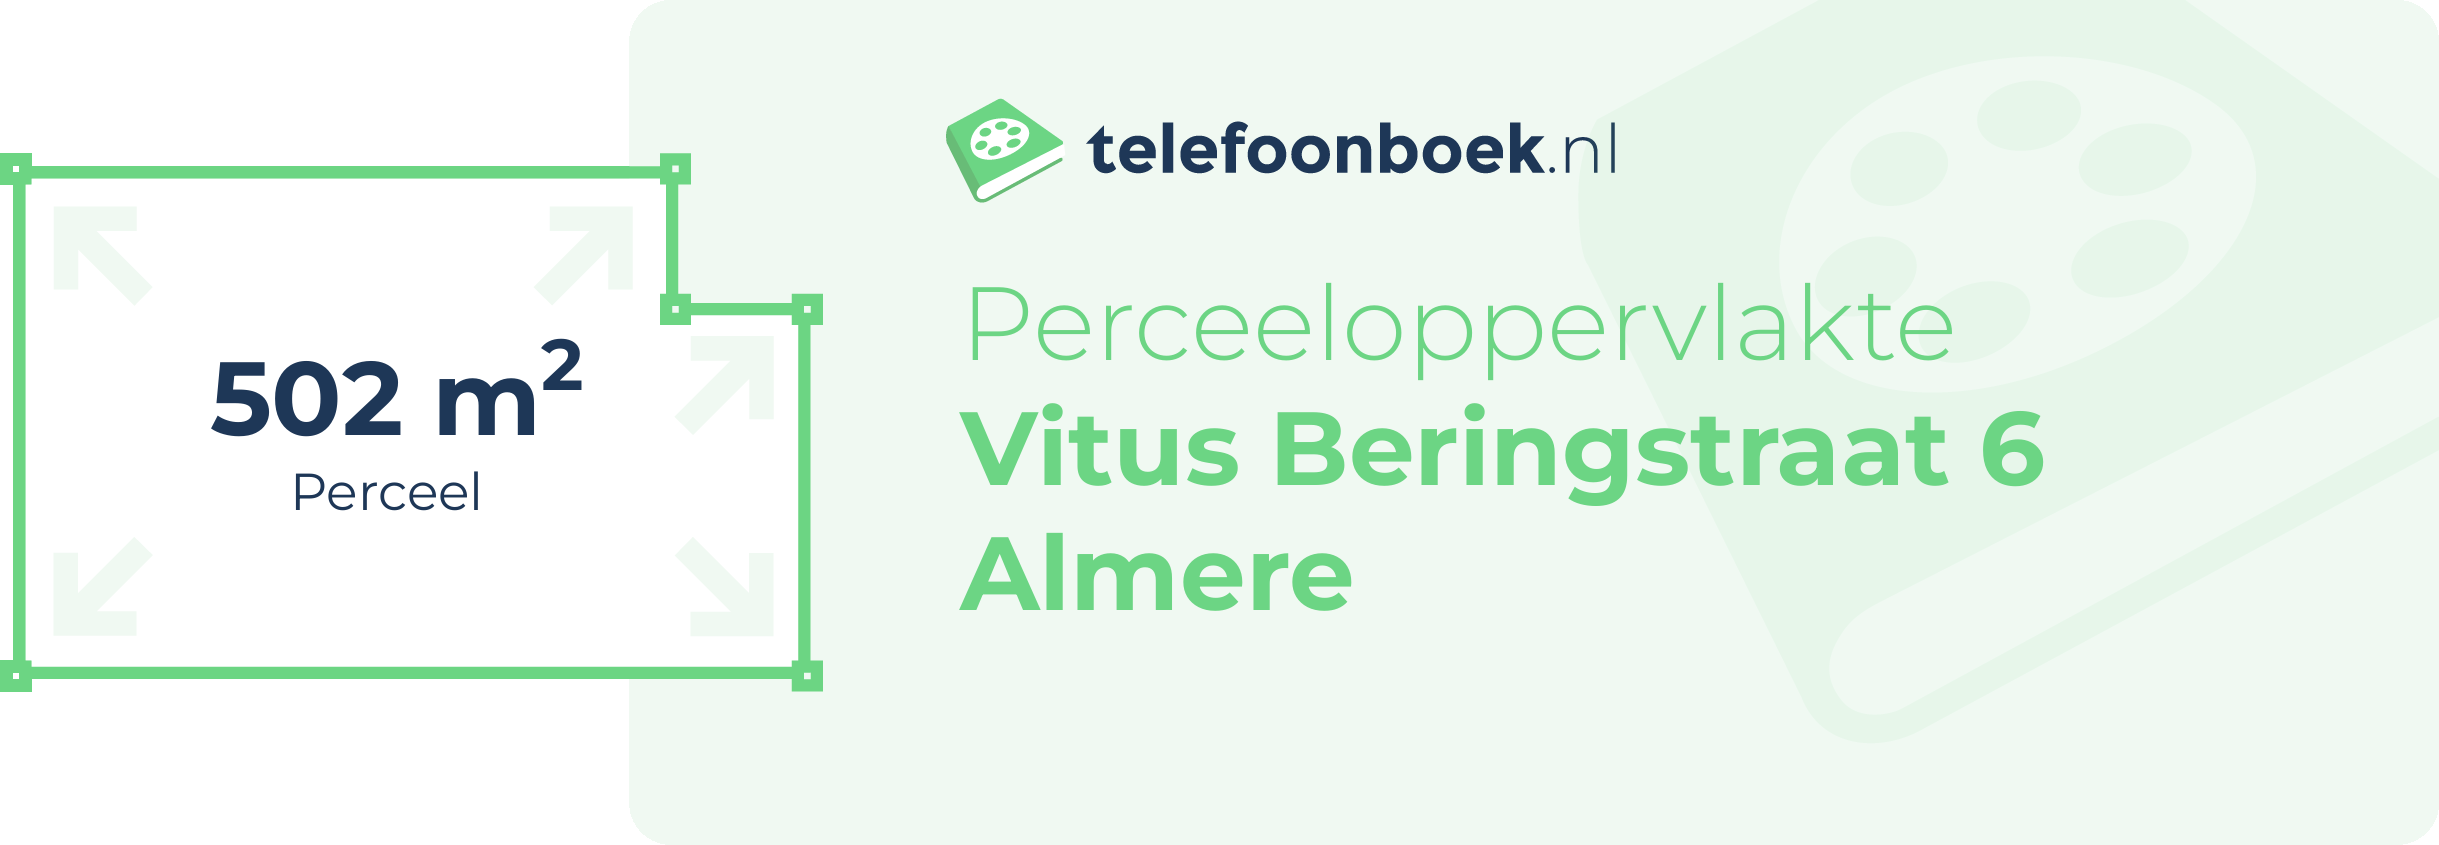 Perceeloppervlakte Vitus Beringstraat 6 Almere